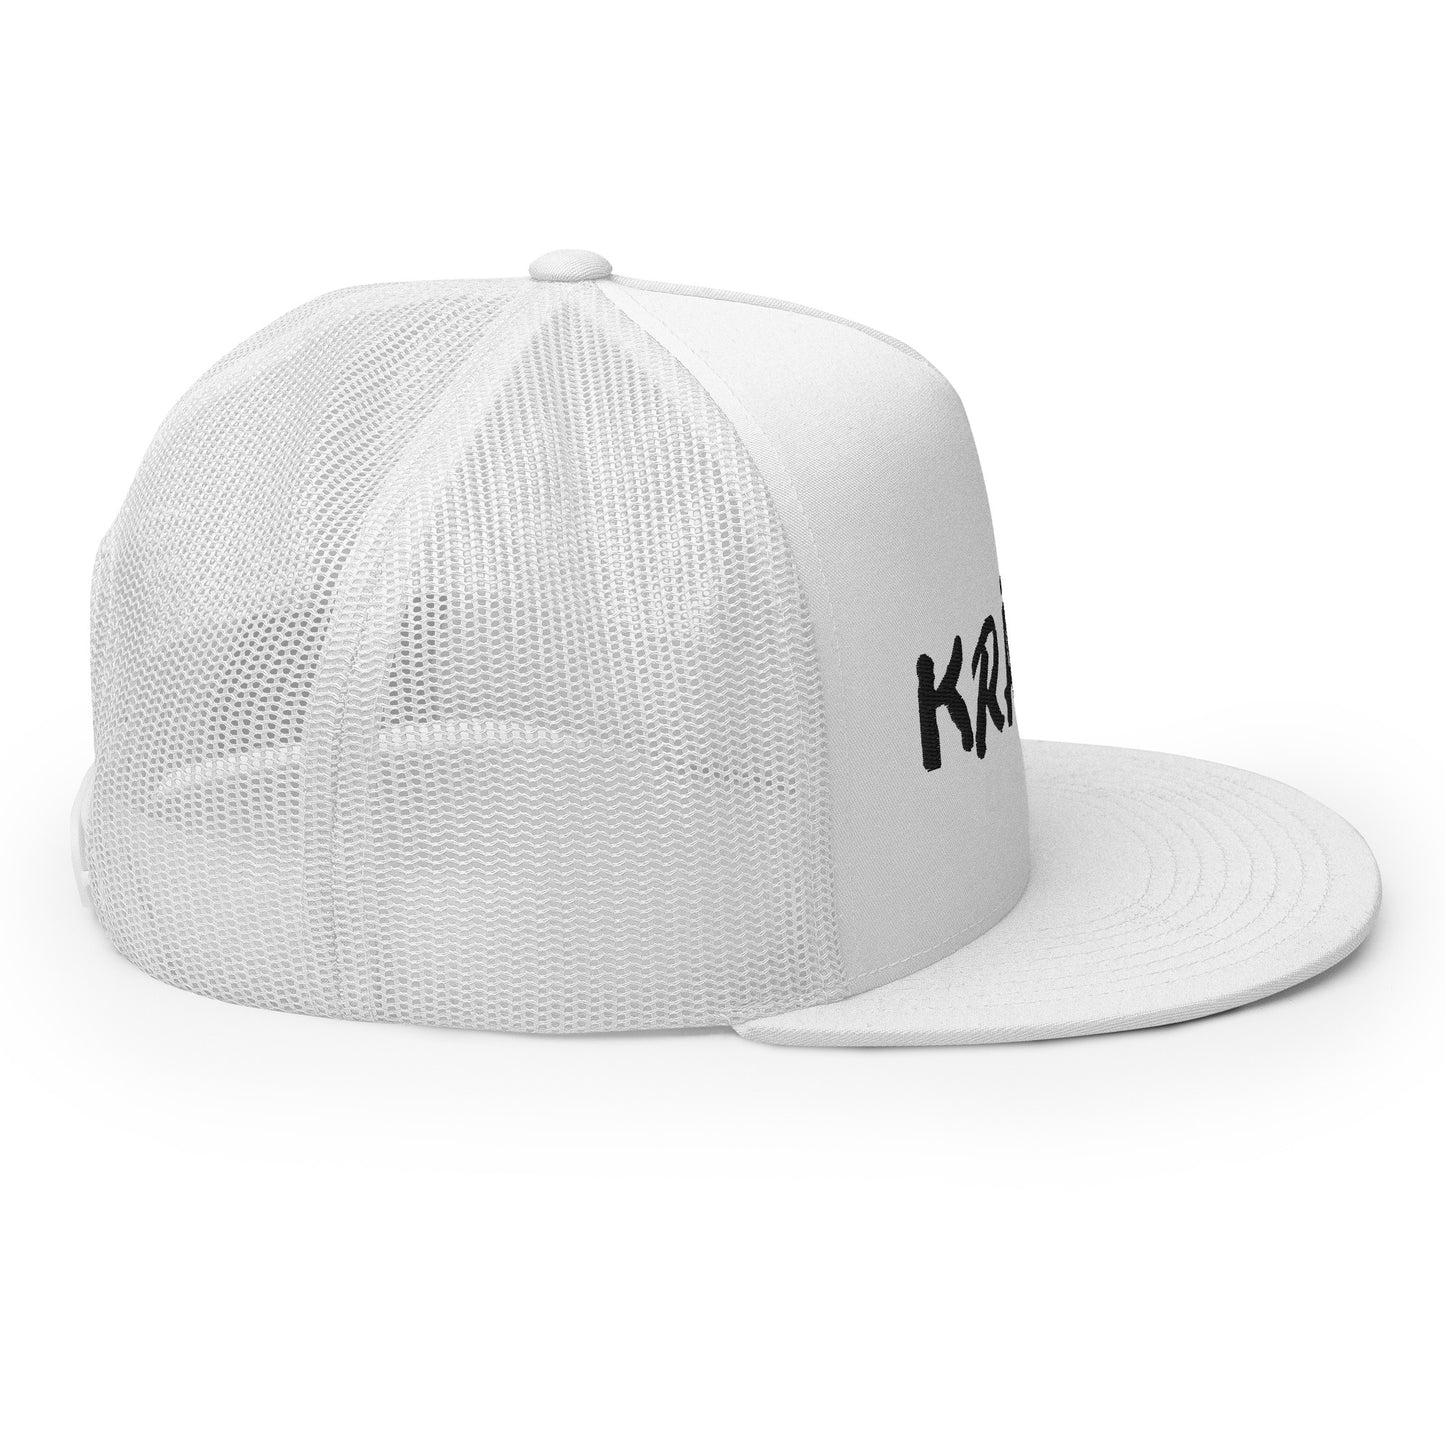 Kranik Brand Hat / Trucker Cap / OG Dare Logo / White / Black